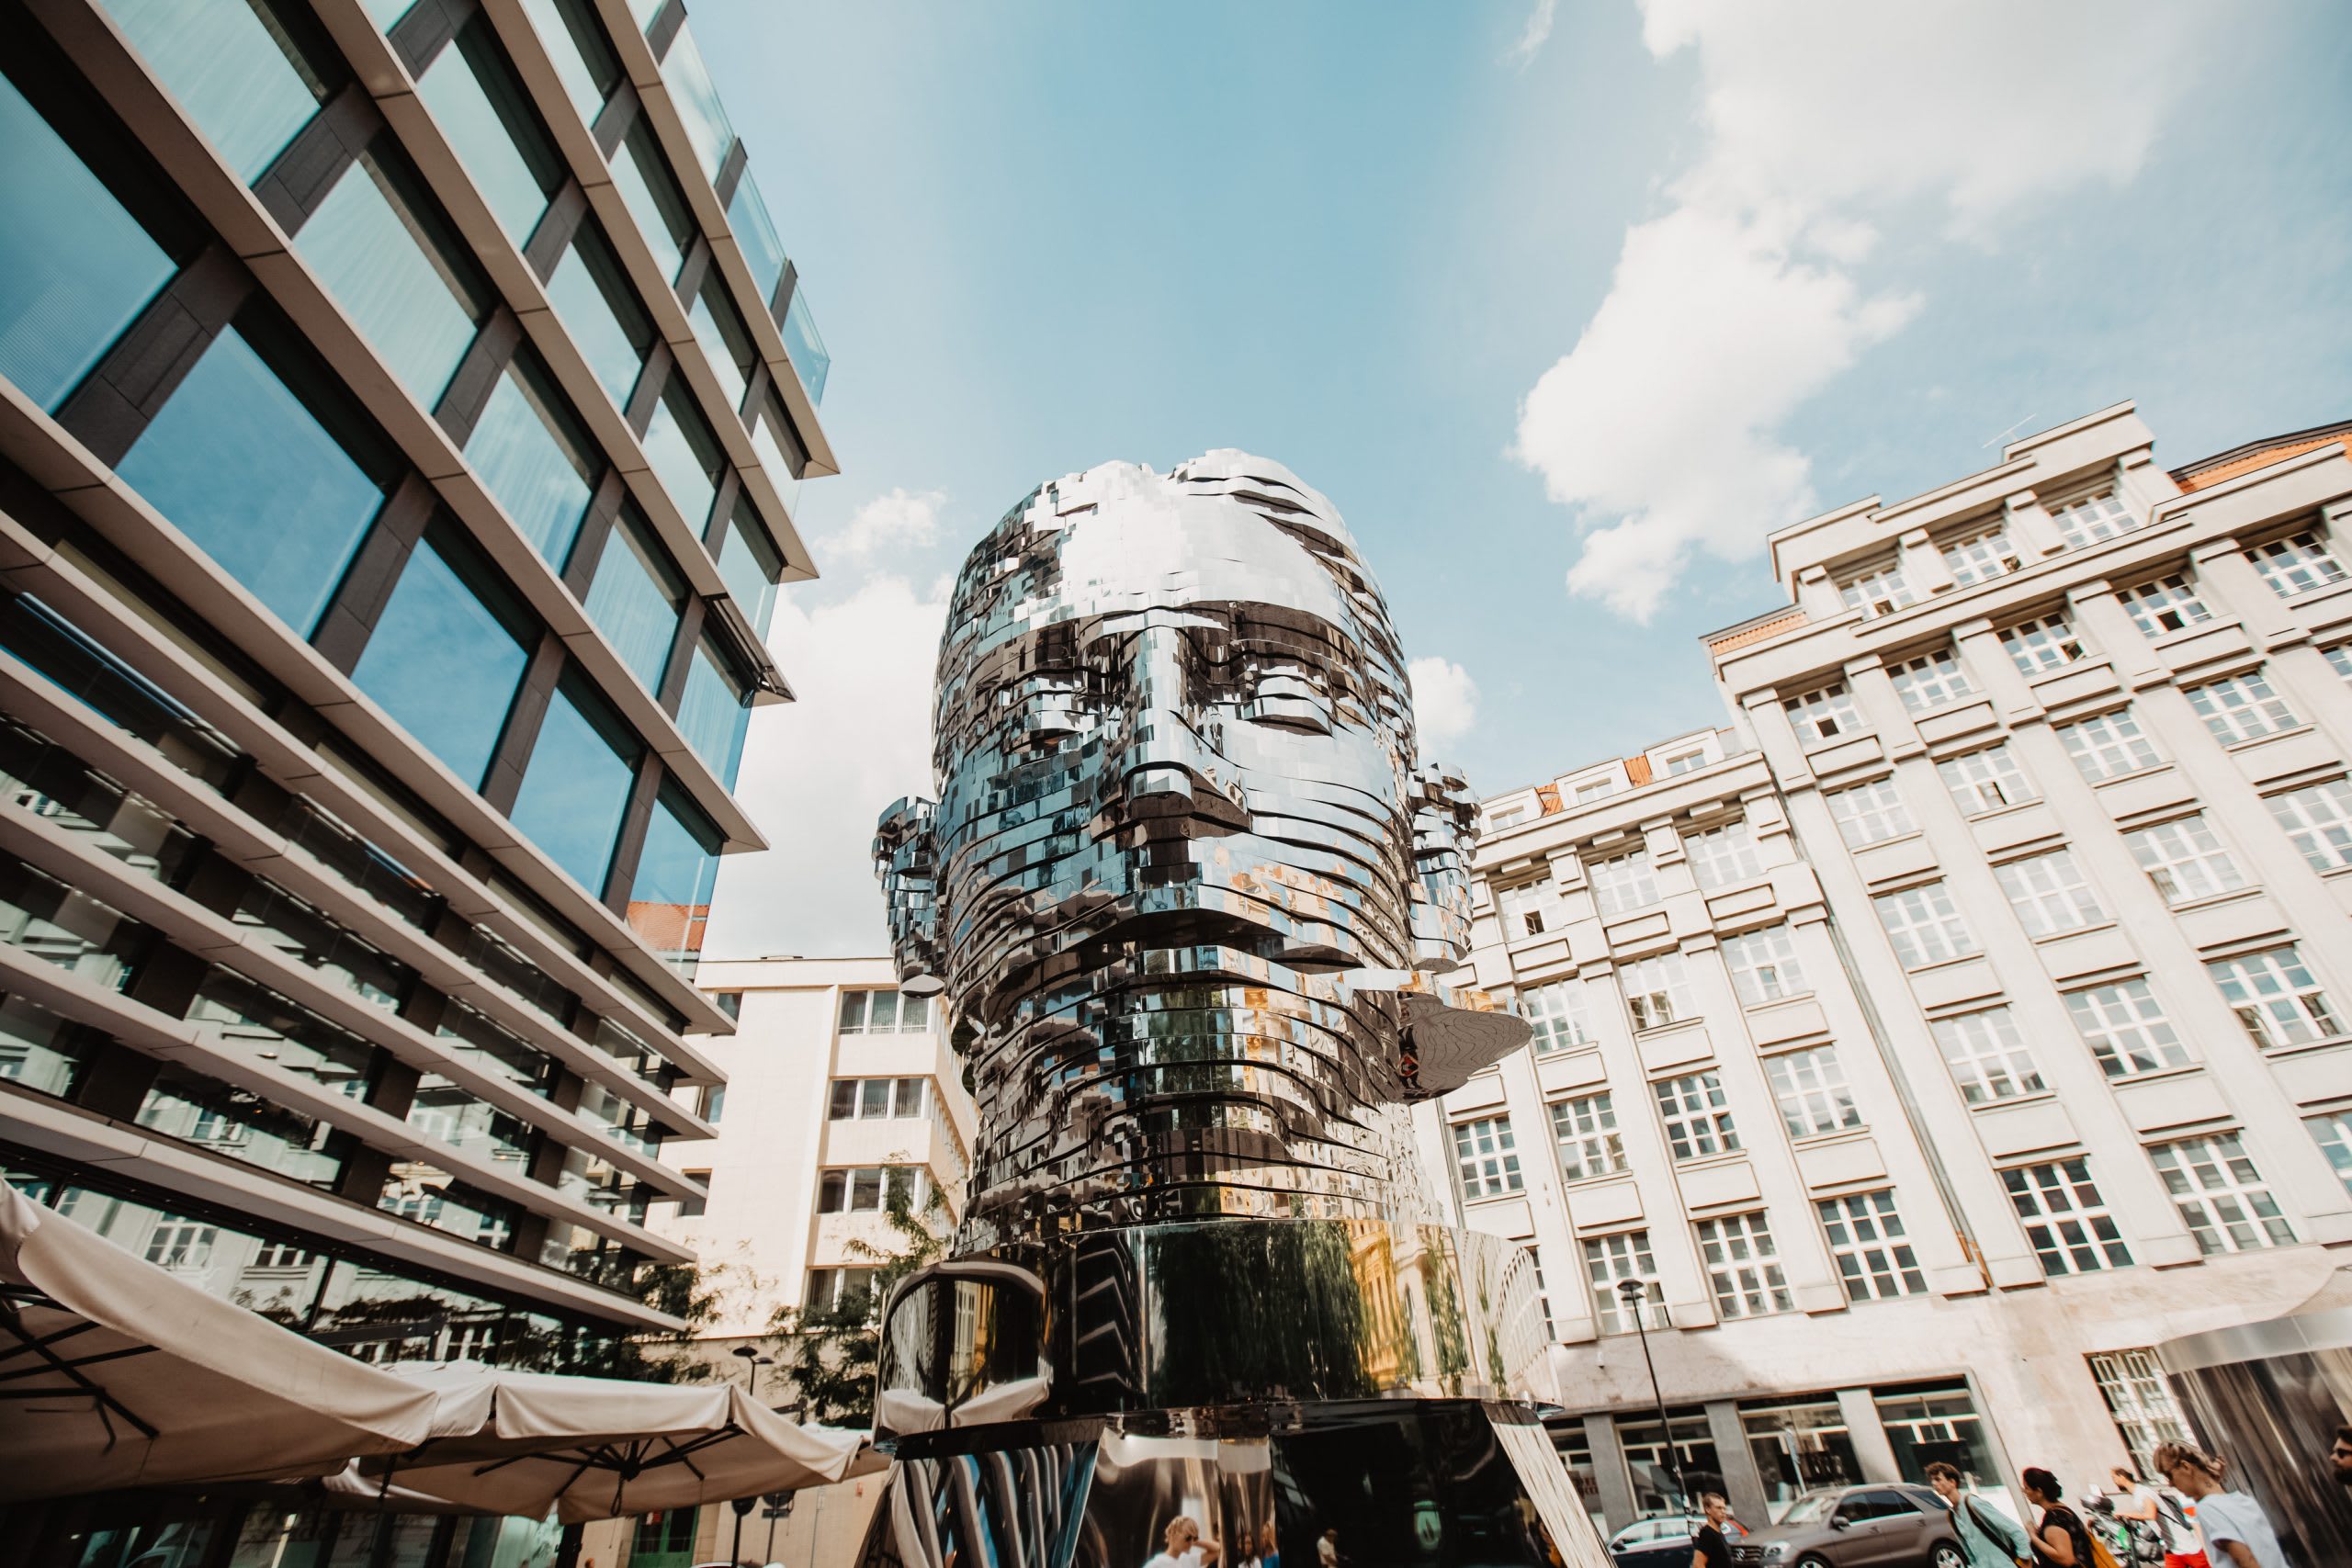 Скульптура "Голова Франца Кавки" чеського художника Давида Чорного на Національному проспекті в Празі